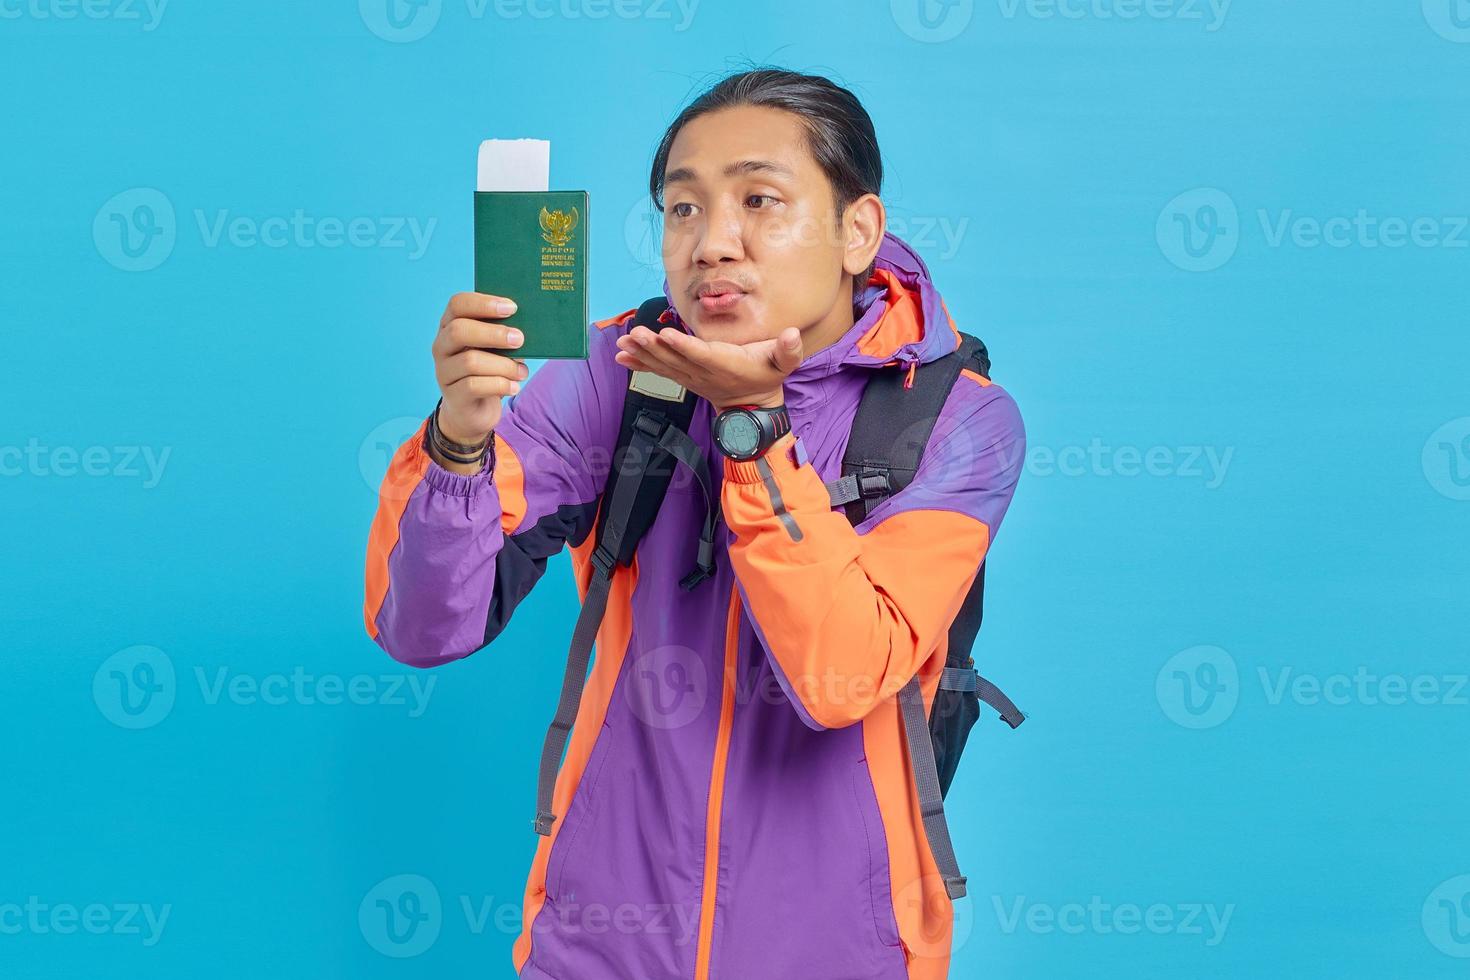 retrato, de, joven, asiático, hombre, llevando, chaqueta púrpura, enviar aire, beso, a, pasaporte, libro, aislado, en, fondo azul foto